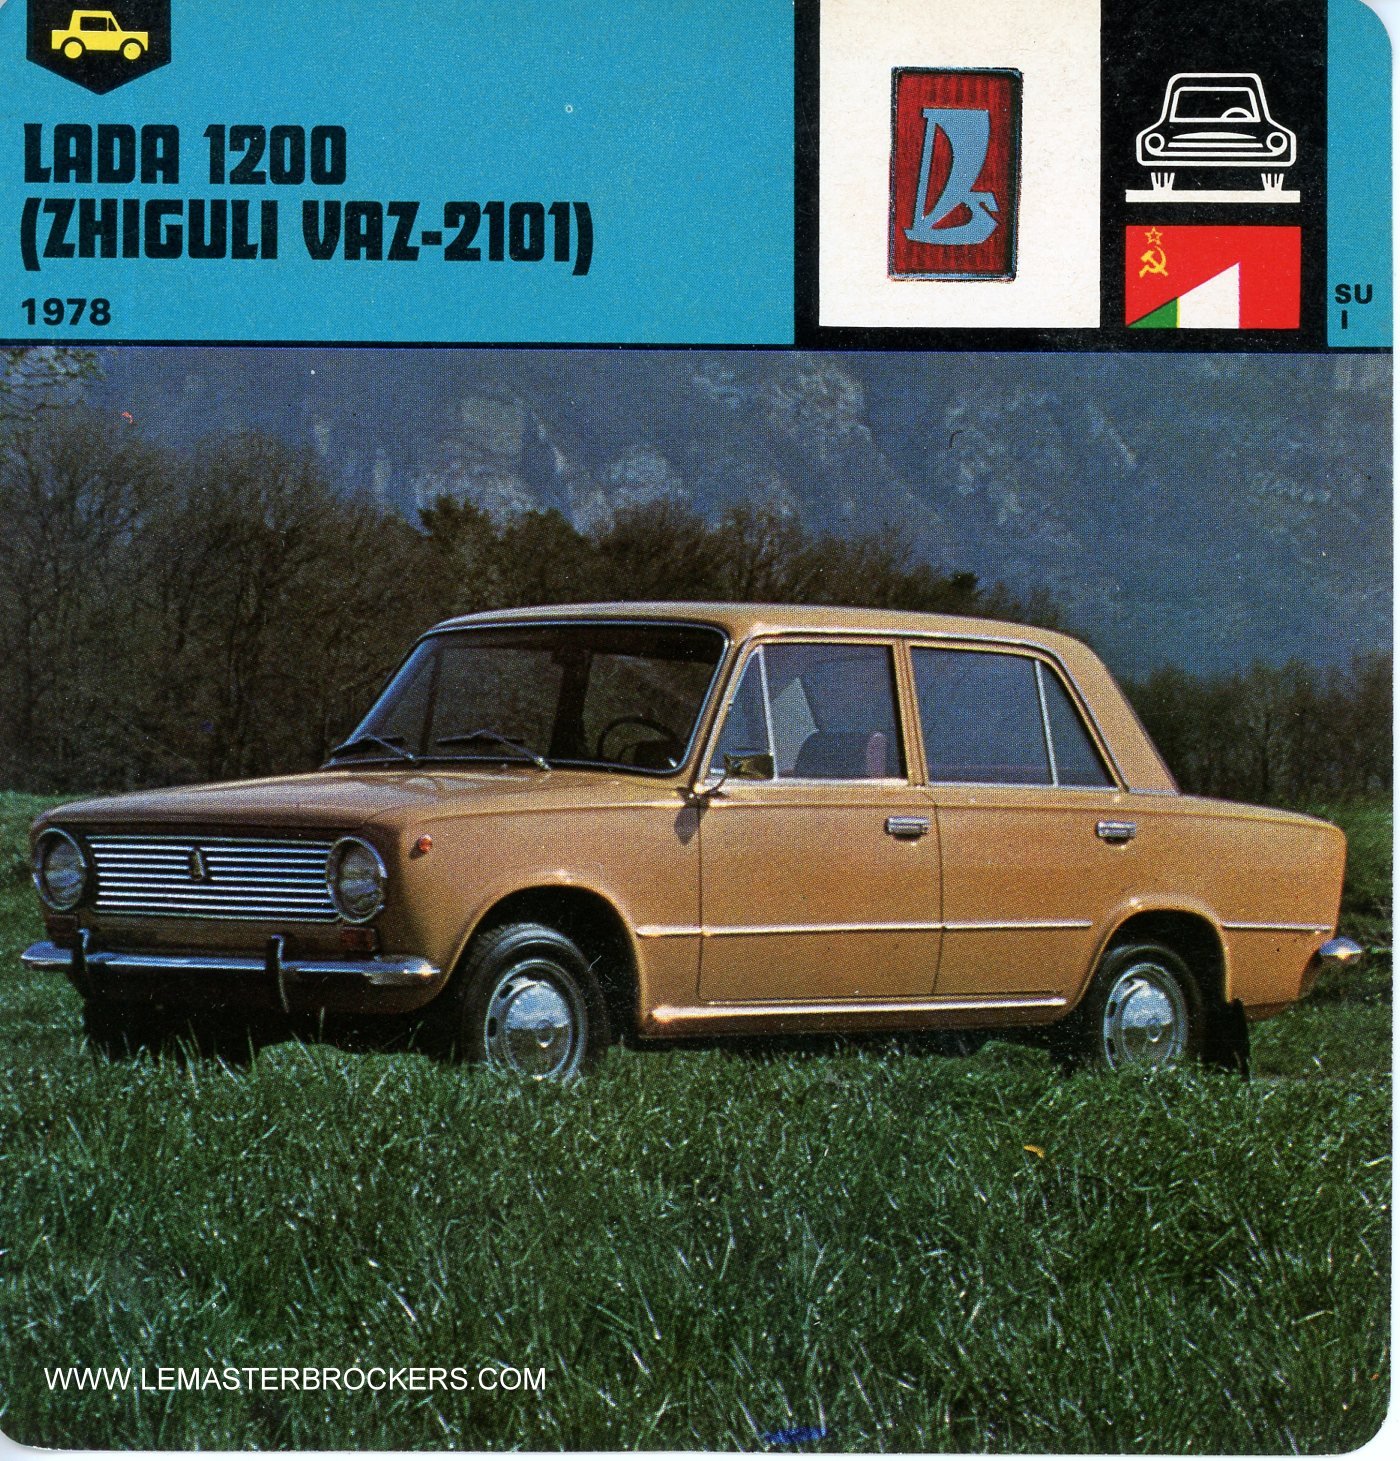 FICHE AUTO LADA 1200 ZHIGULI VAZ-2101 1978